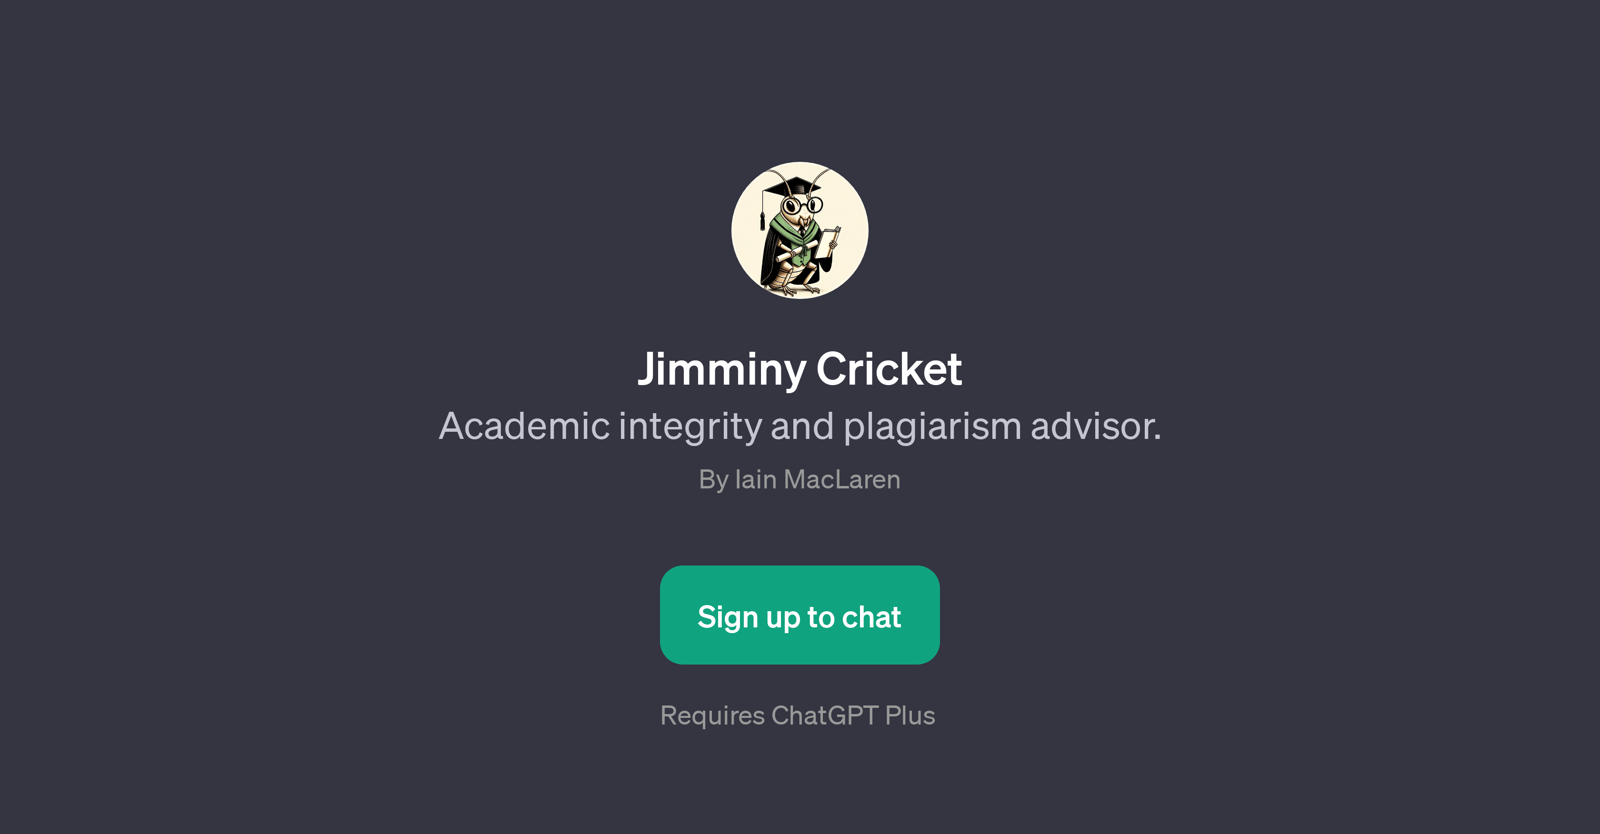 Jimminy Cricket website